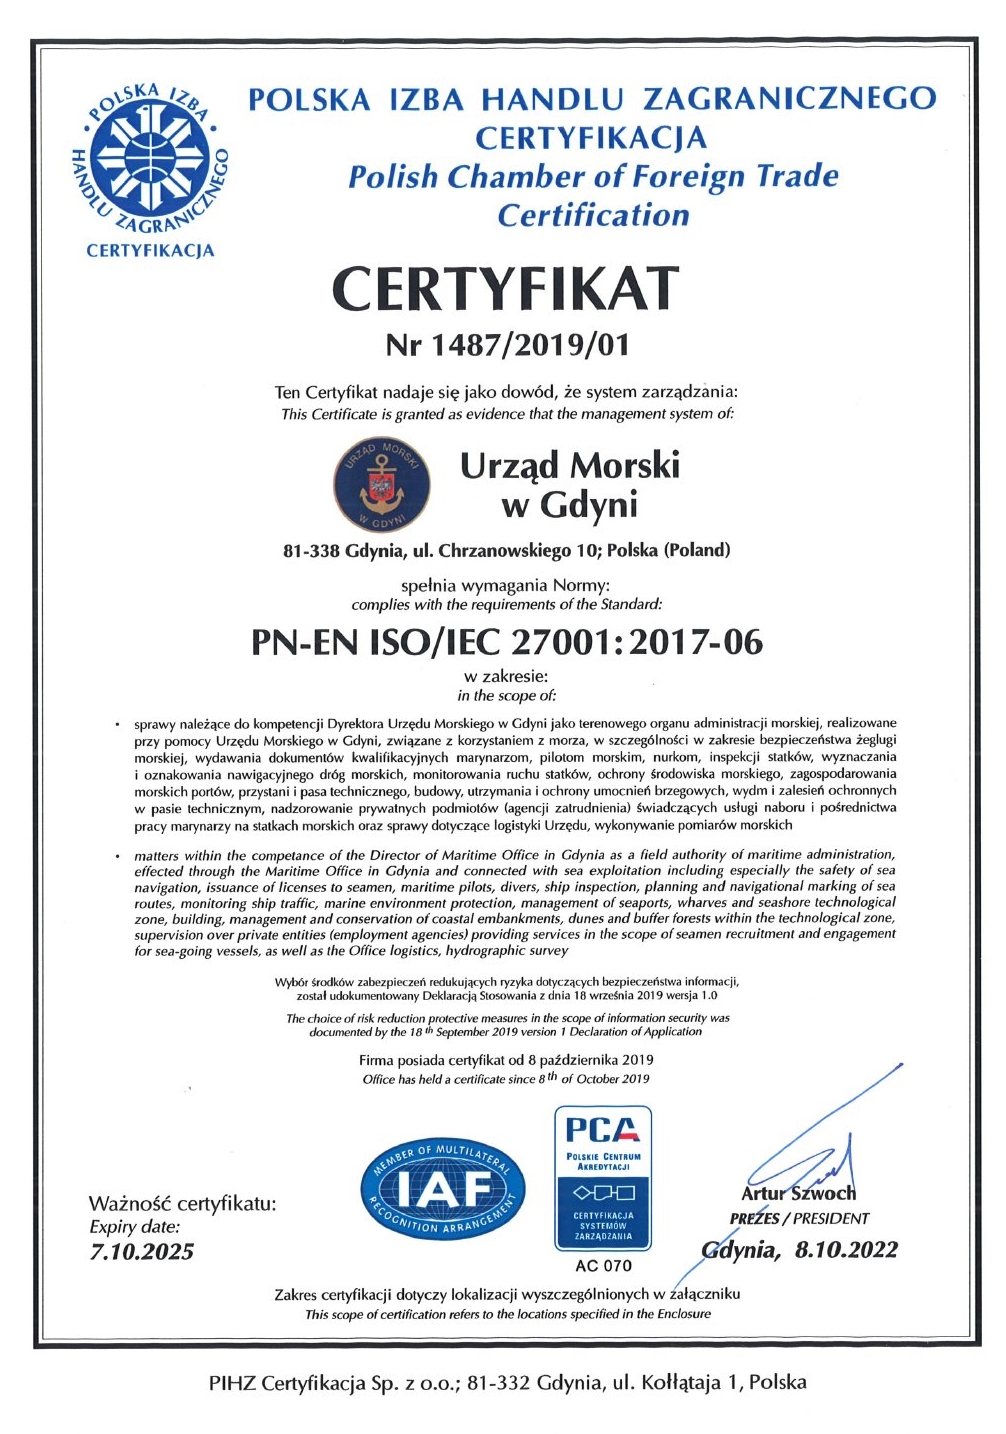 POLSKA IZBA HANDLU ZAGRANICZNEGO CERTYFIKACJA CERTYFIKAT Nr 1487/2019 Ten Certyfikat nadaje się jako dowód, że system zarządzania spełnia wymagania normy 'PN-EN ISO/IEC 27001:2017-06